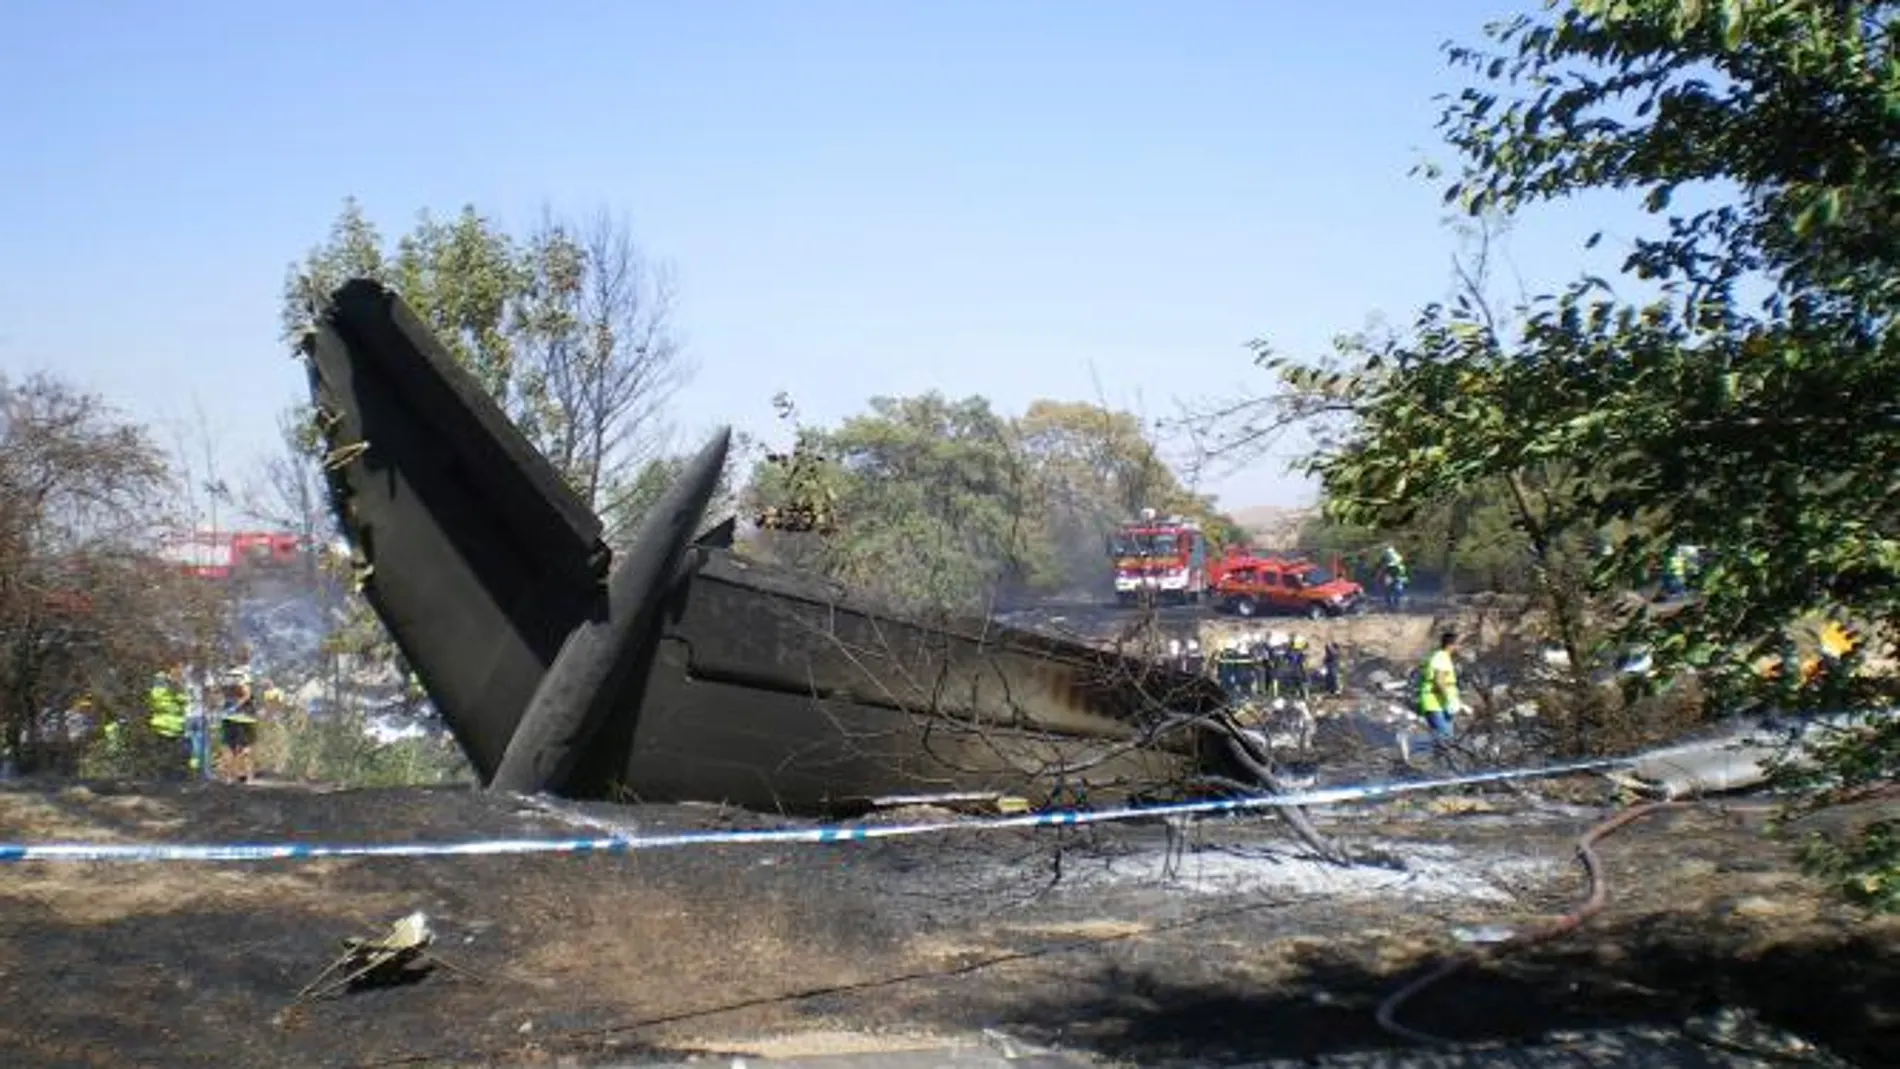 Cola del avión de Spanair siniestrado tras el accidente